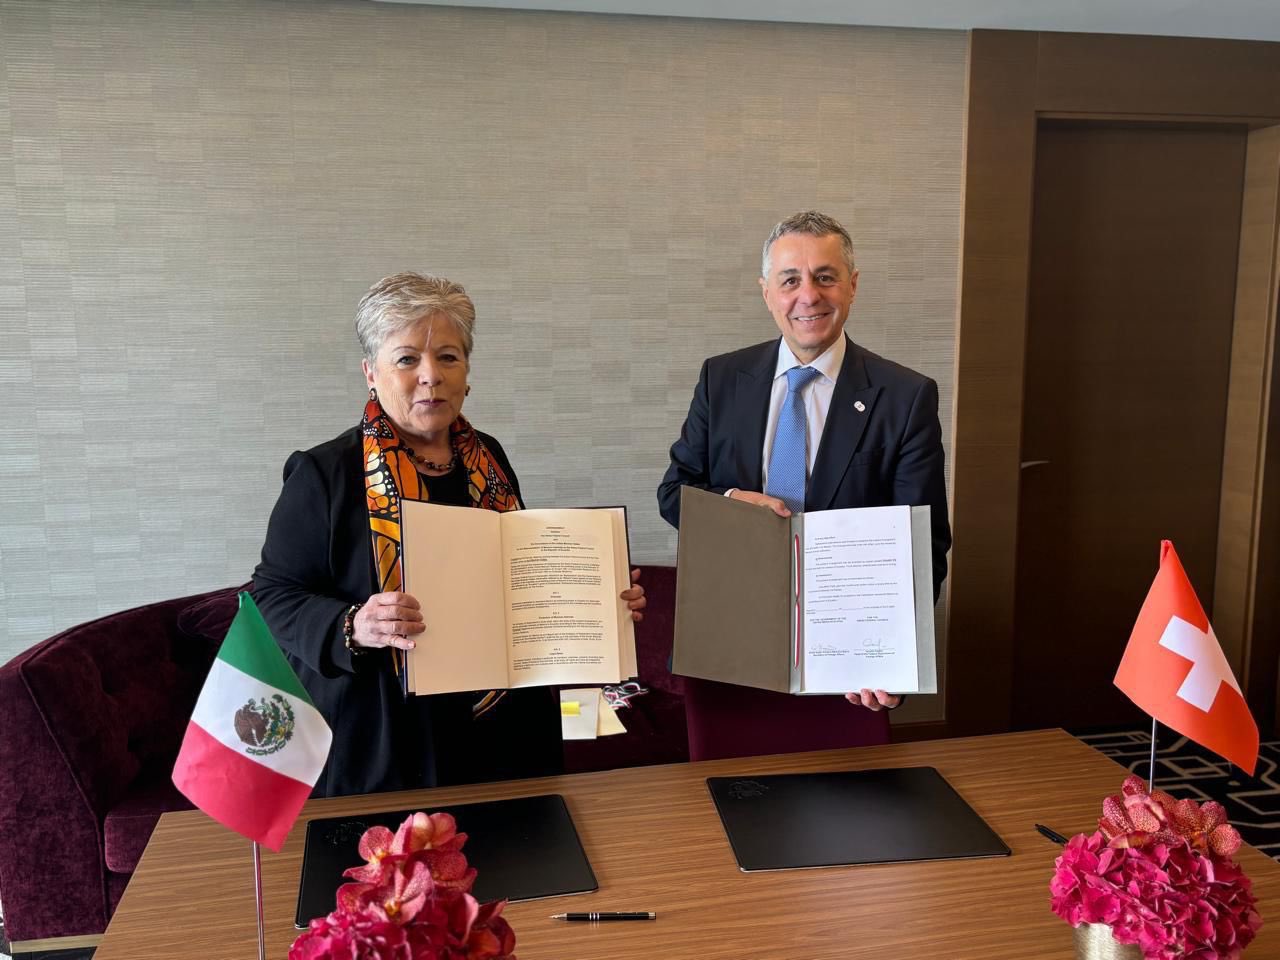 México anuncia acuerdo con Suiza para que el país europeo ejerza "funciones diplomáticas y consulares" mexicanas en Ecuador